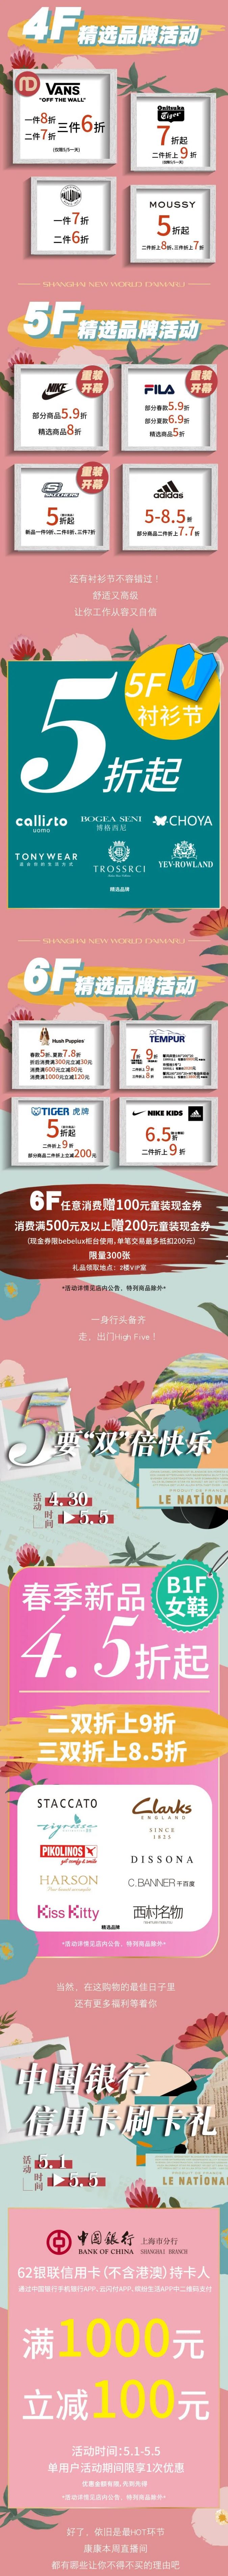 上海新世界大丸百貨2002五一折扣 一線化妝品首次8折